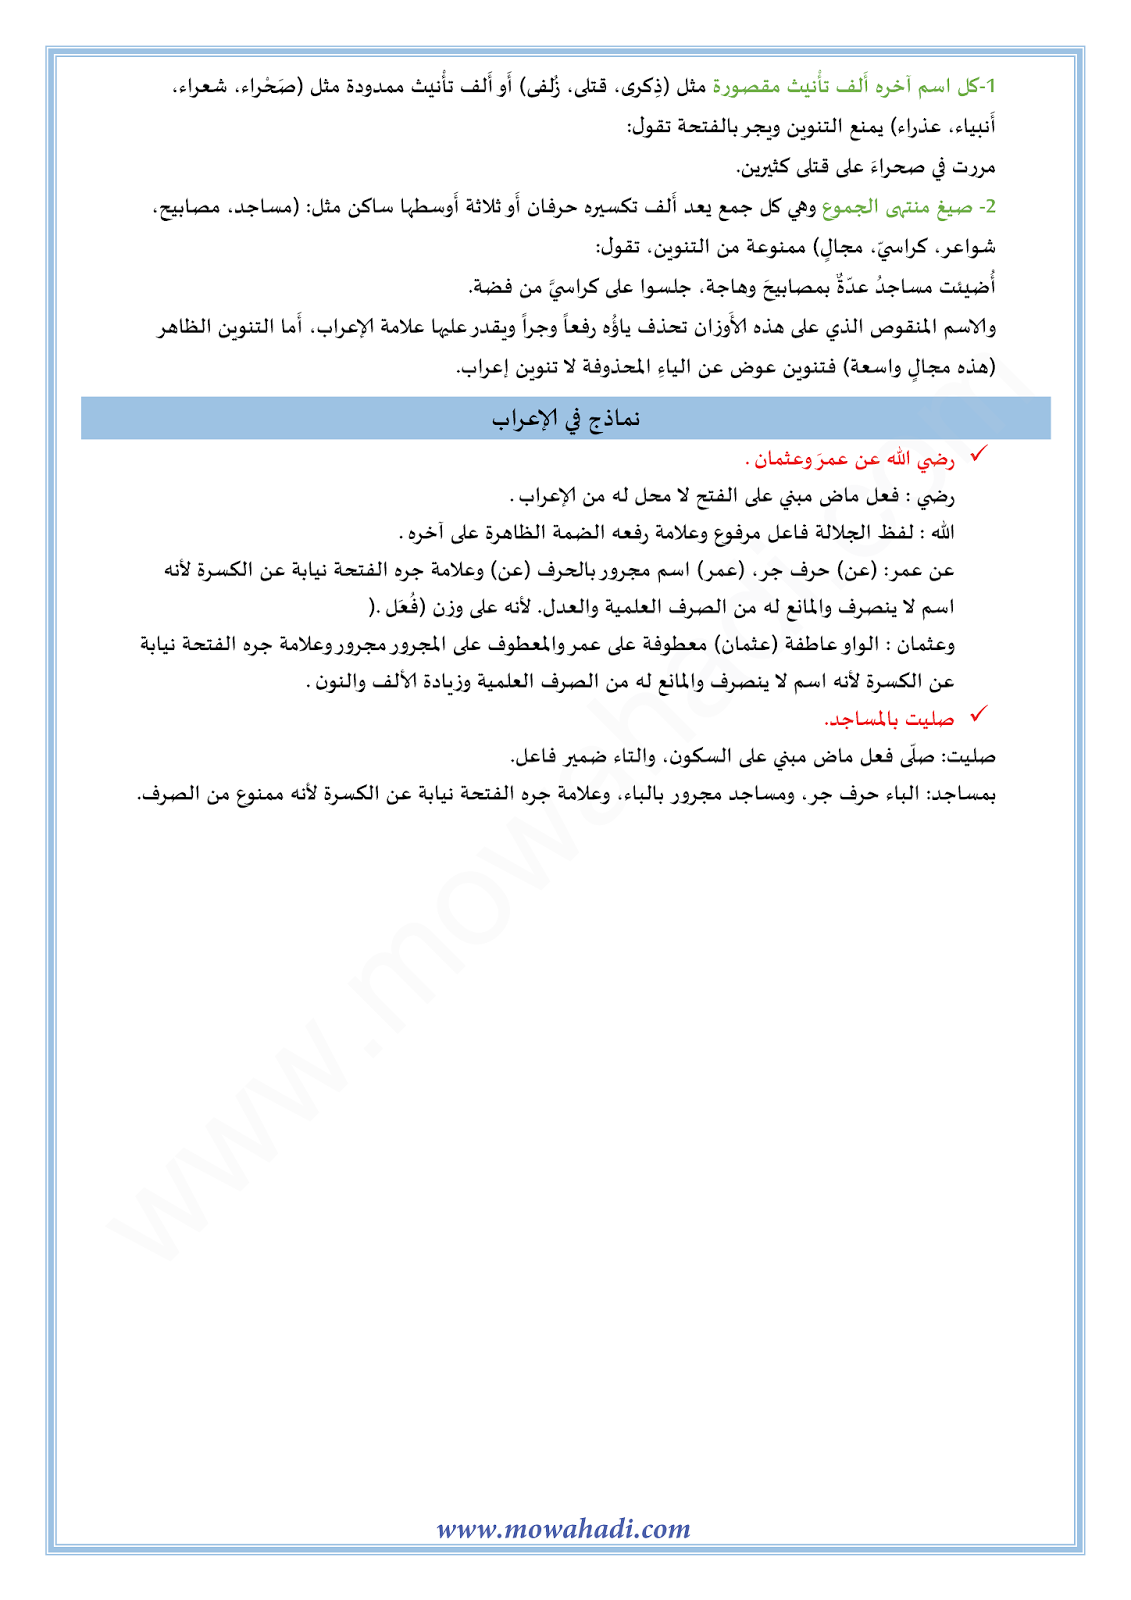 الدرس اللغوي الممنوع من الصرف للسنة الثالثة اعدادي في مادة اللغة العربية 7-cours-dars-loghawi3_004